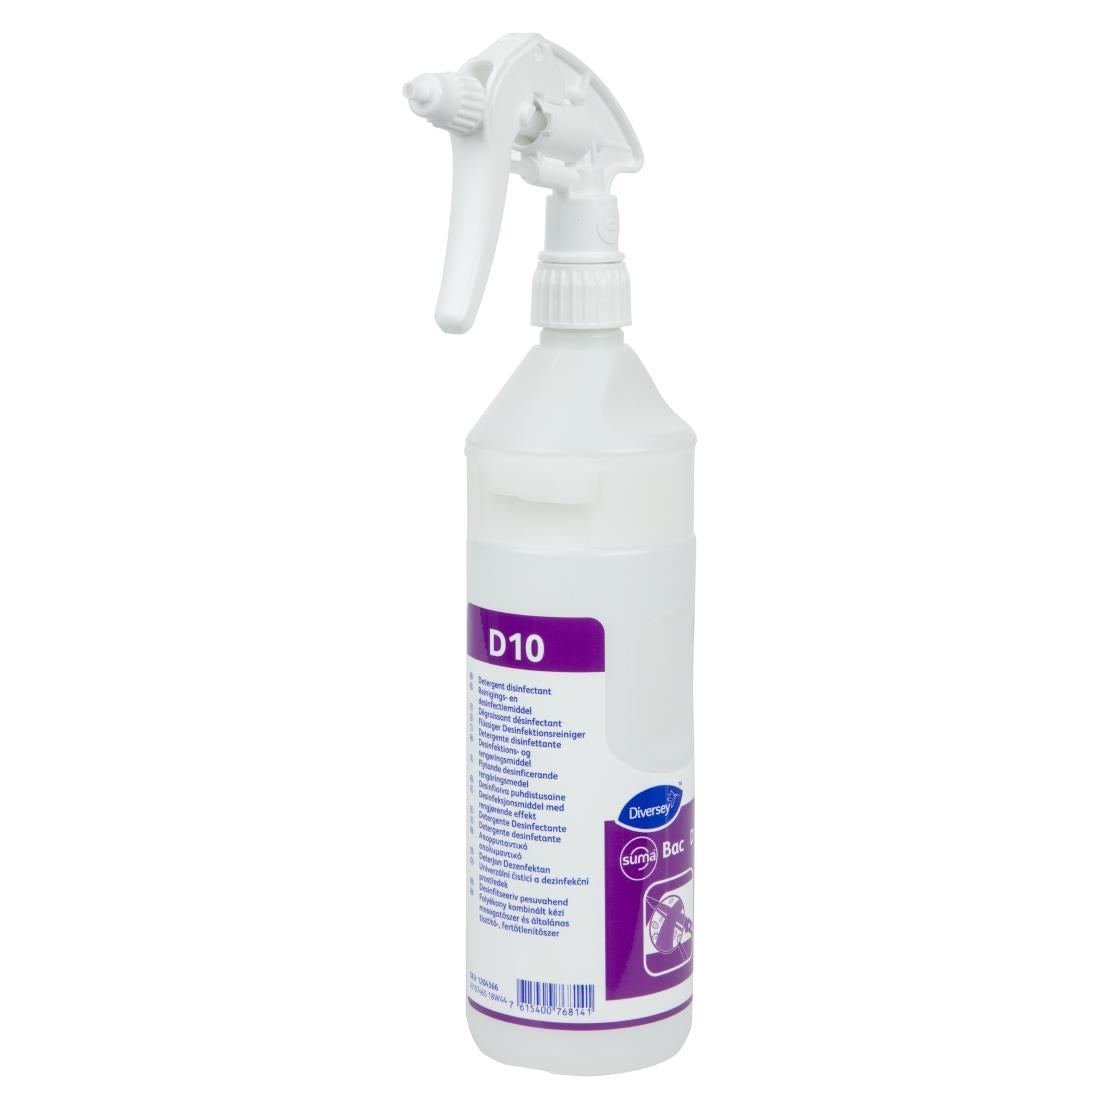 CC116 Suma D10 Cleaner and Sanitiser Refill Bottles 750ml (2 Pack)